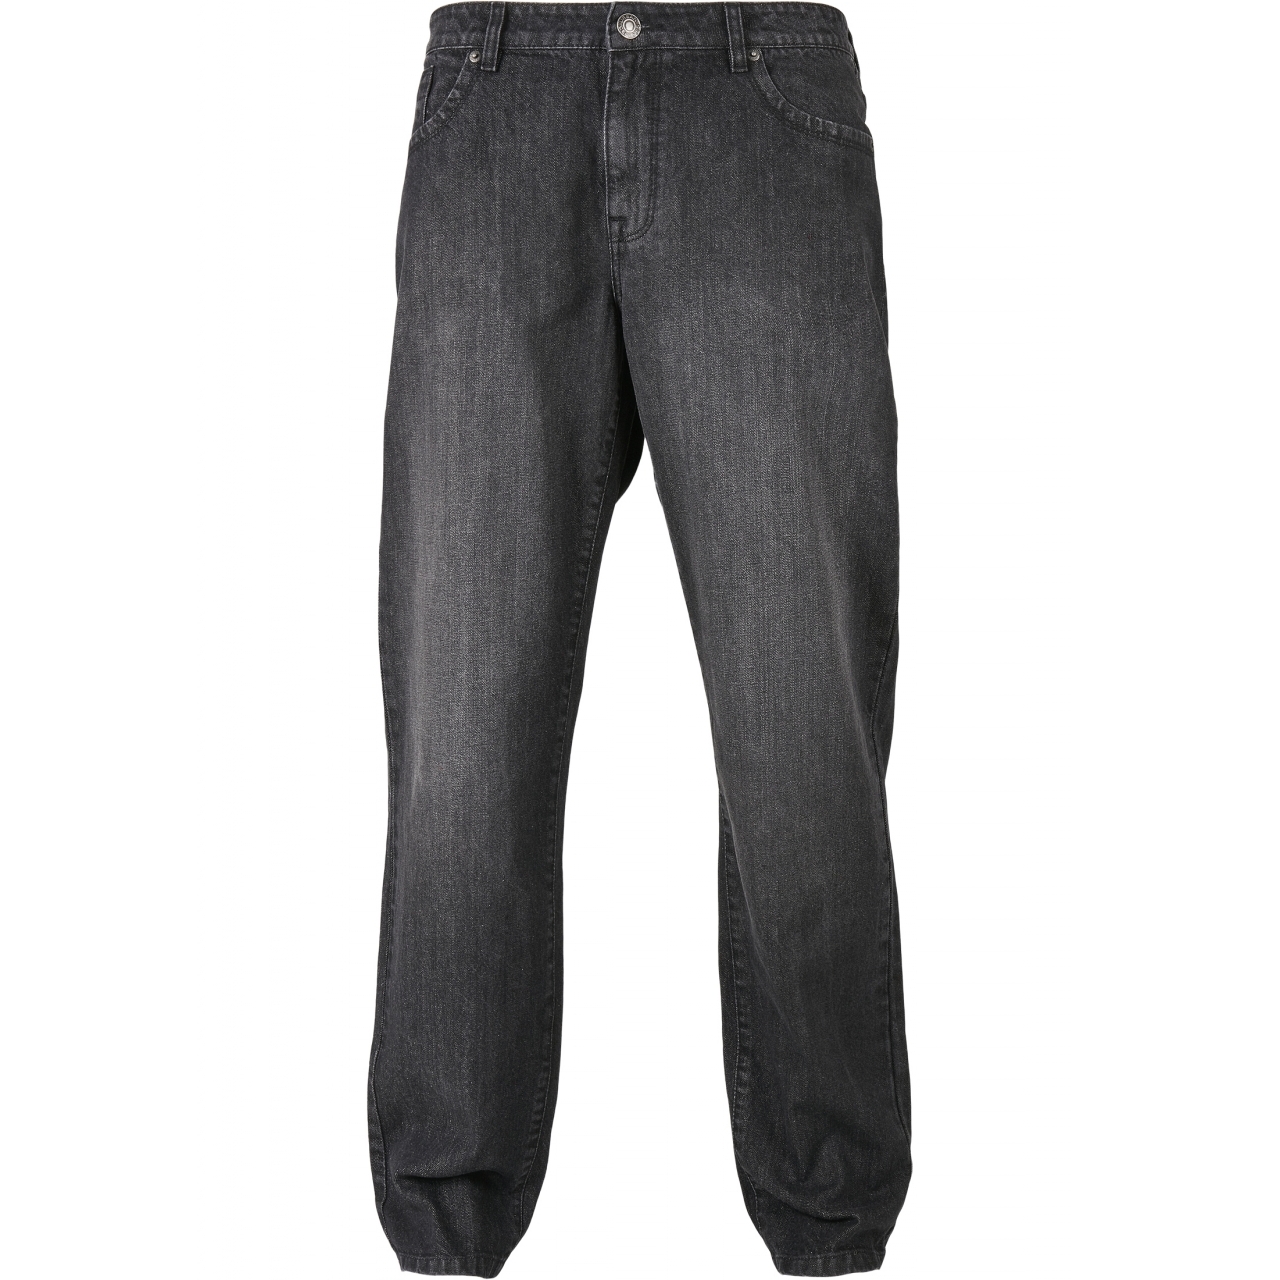 Džíny Urban Classics Loose Fit Jeans - černé, 33/34